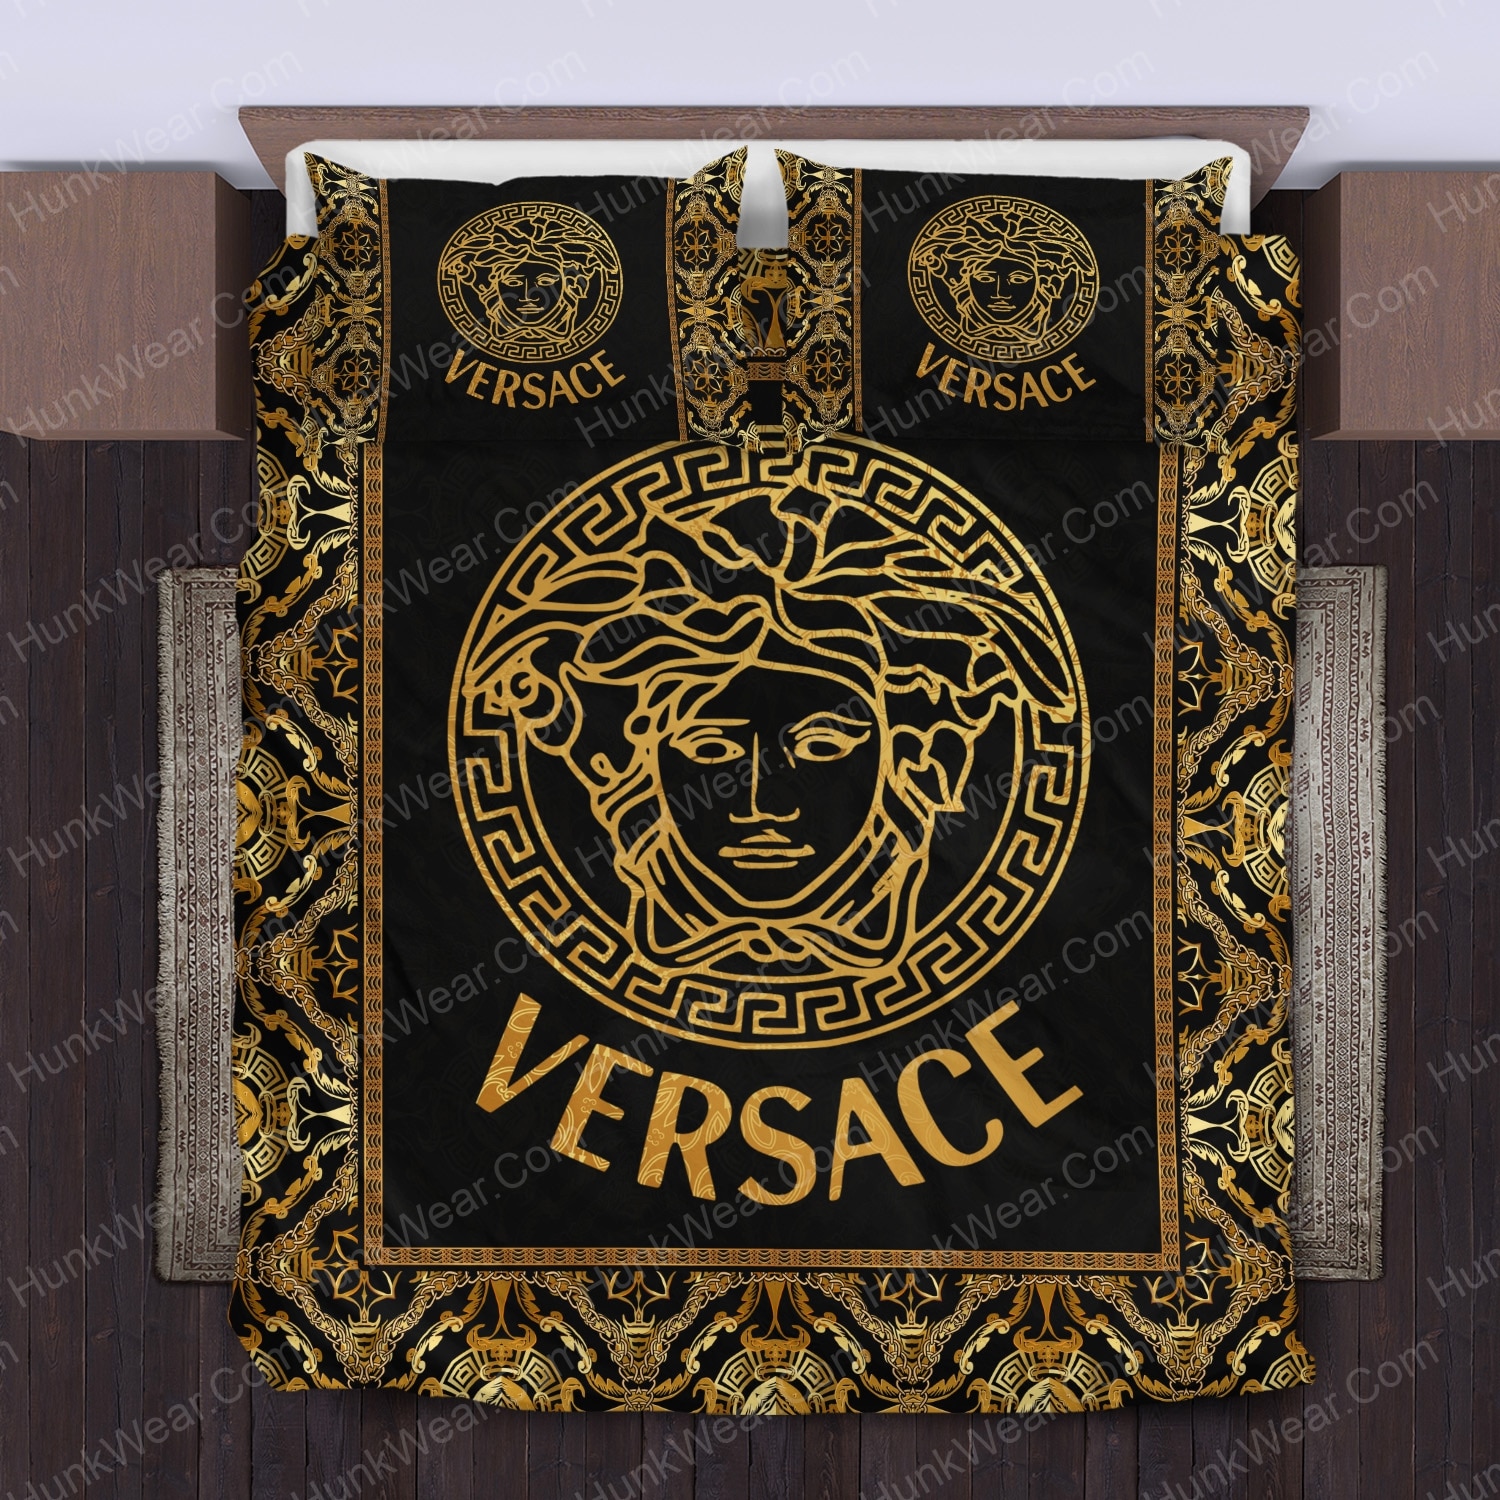 versace logo black and gold bed set bedding set 2